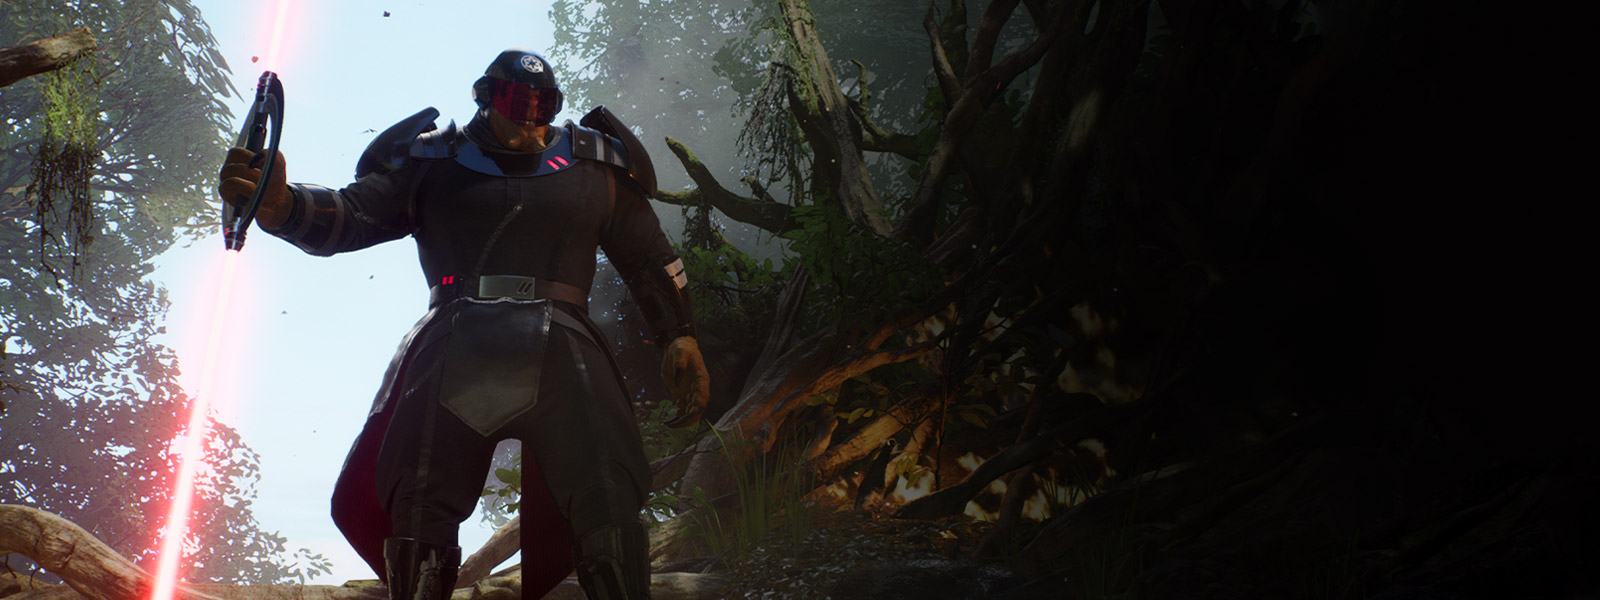 Um grande alienígena usando a armadura Inquisitor segura um sabre de luz duplo em uma selva